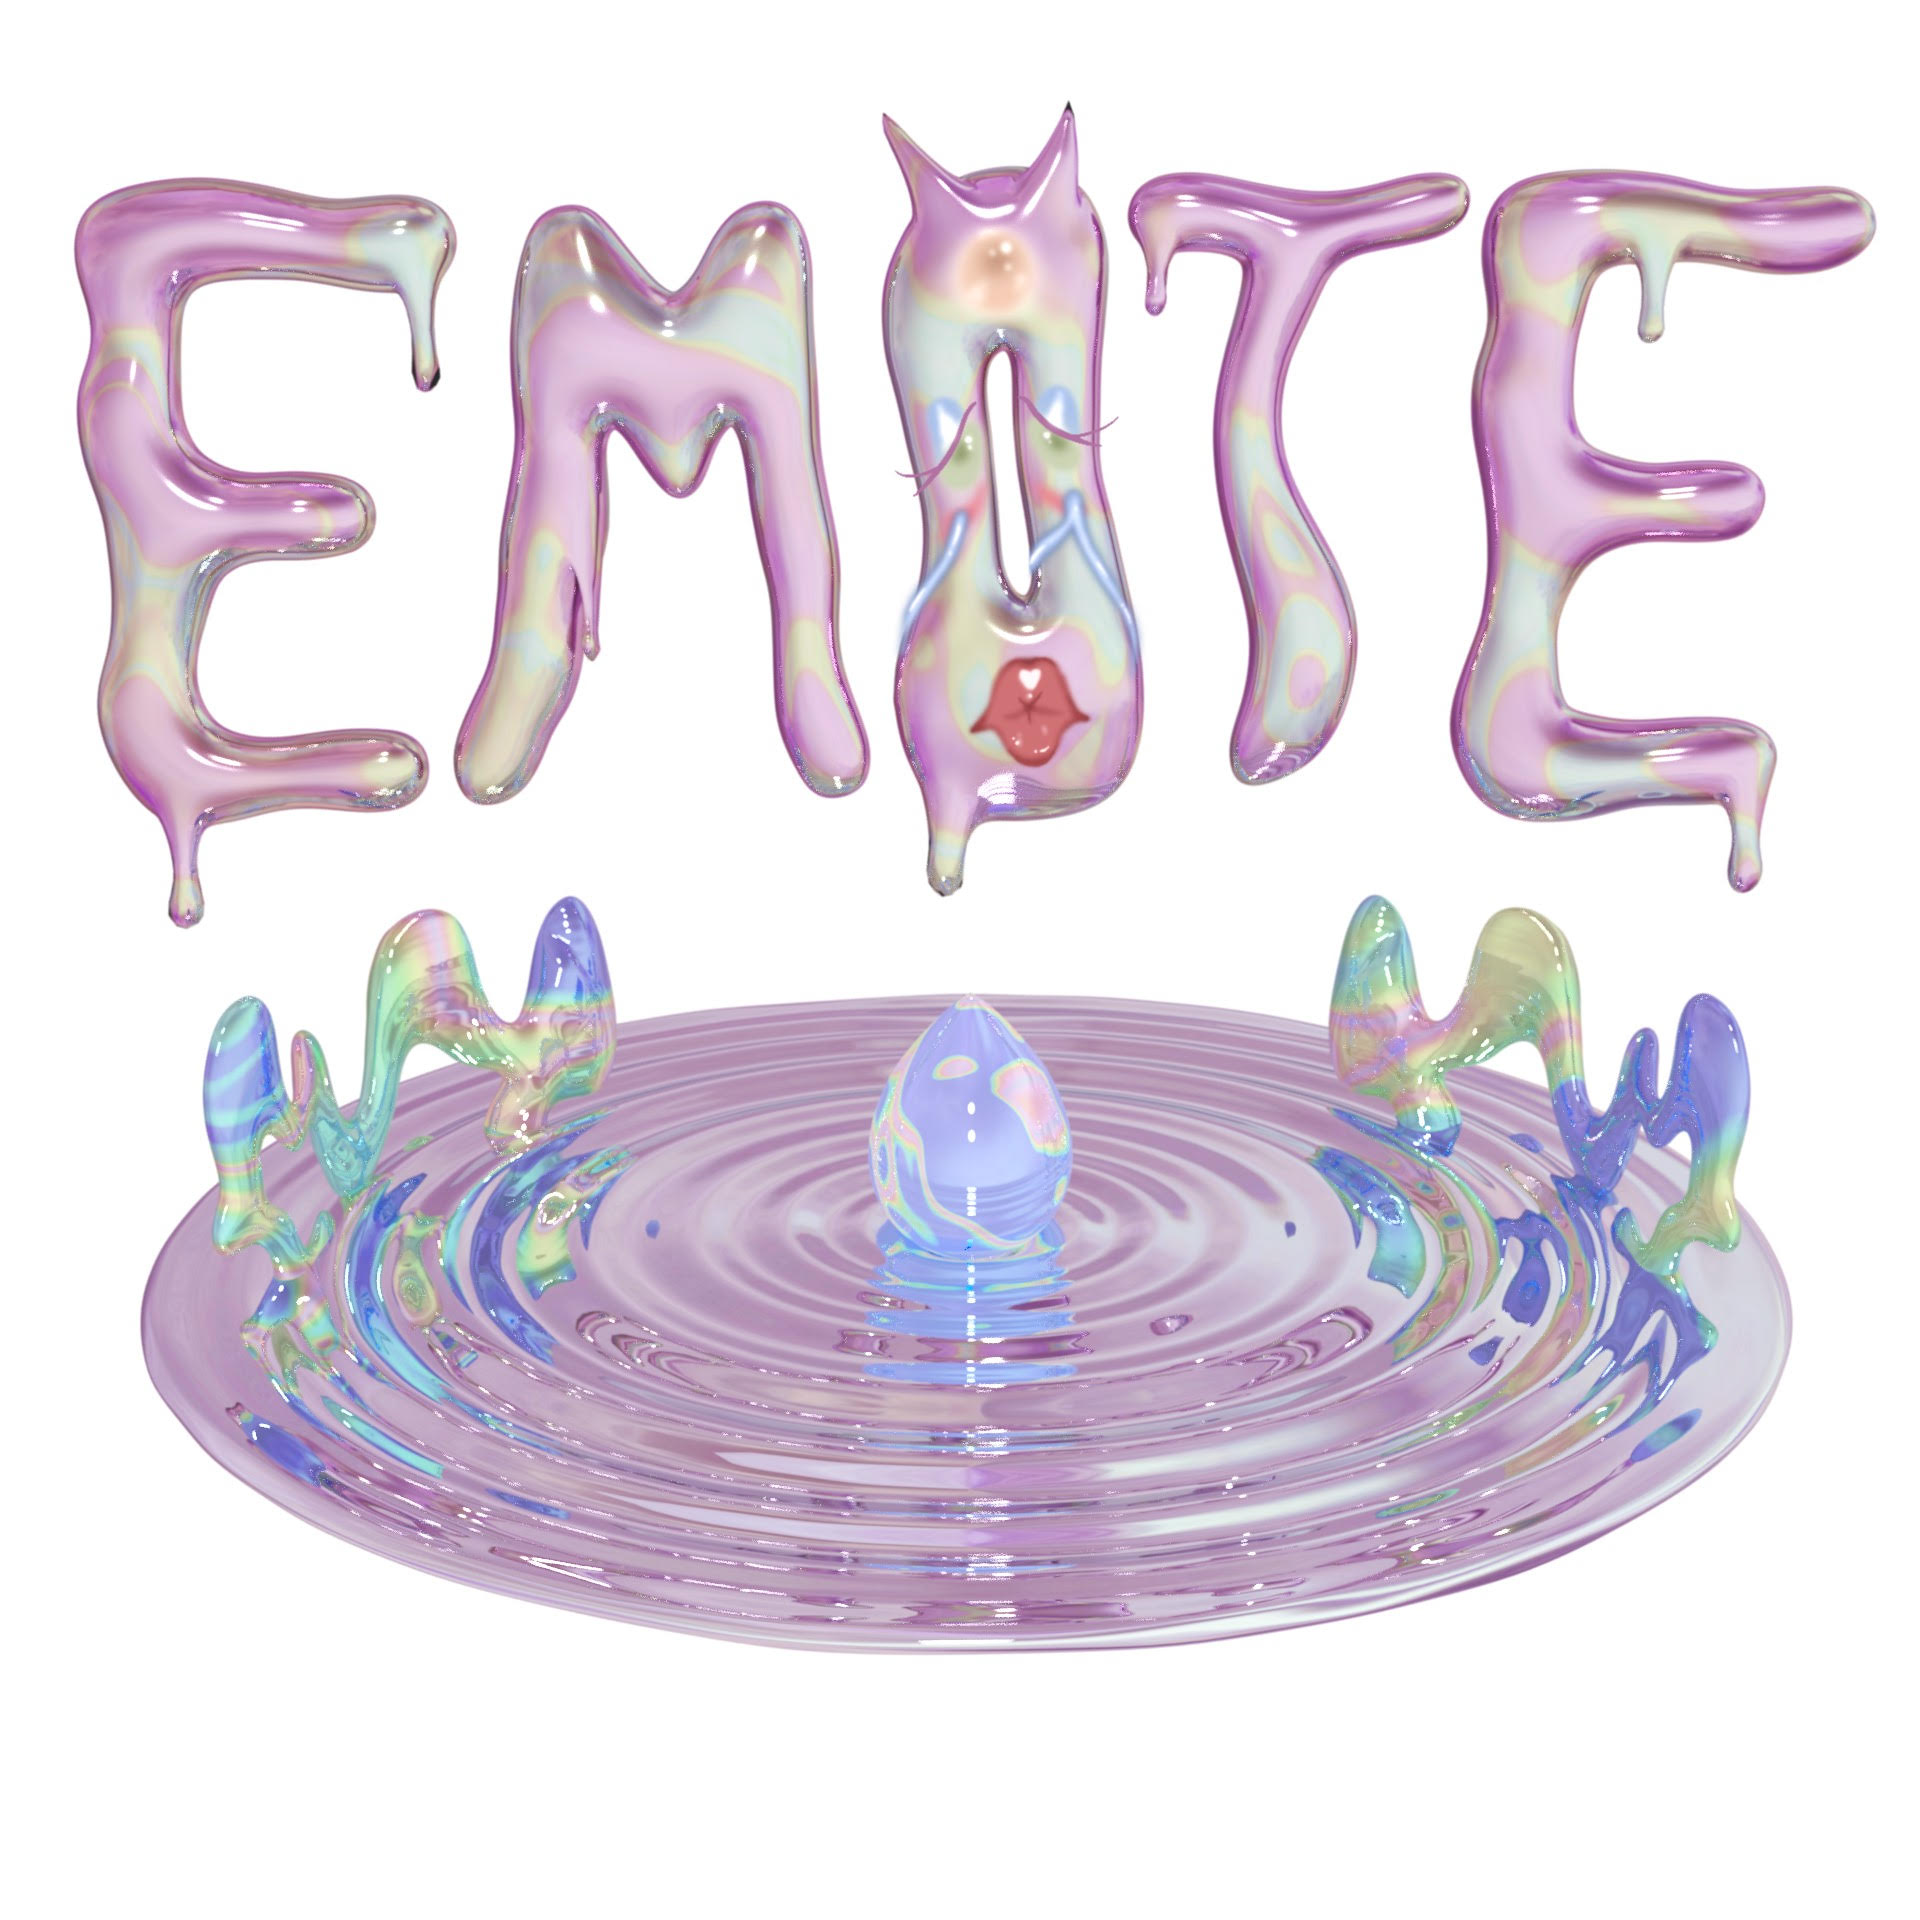 EMOTE logo